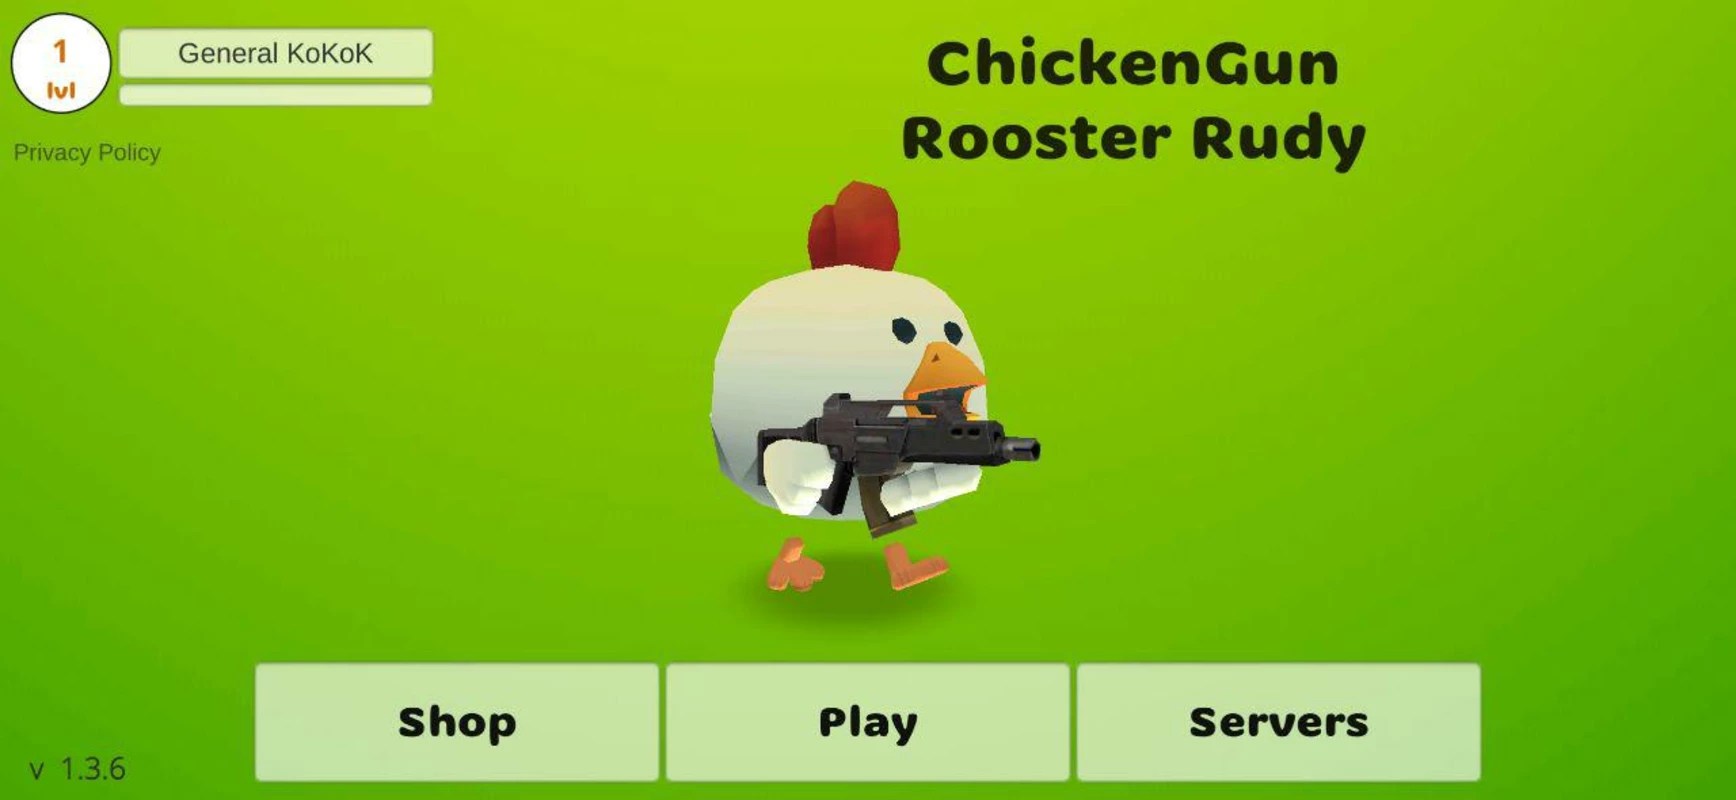 Chickens Gun 4.0.2 APK feature